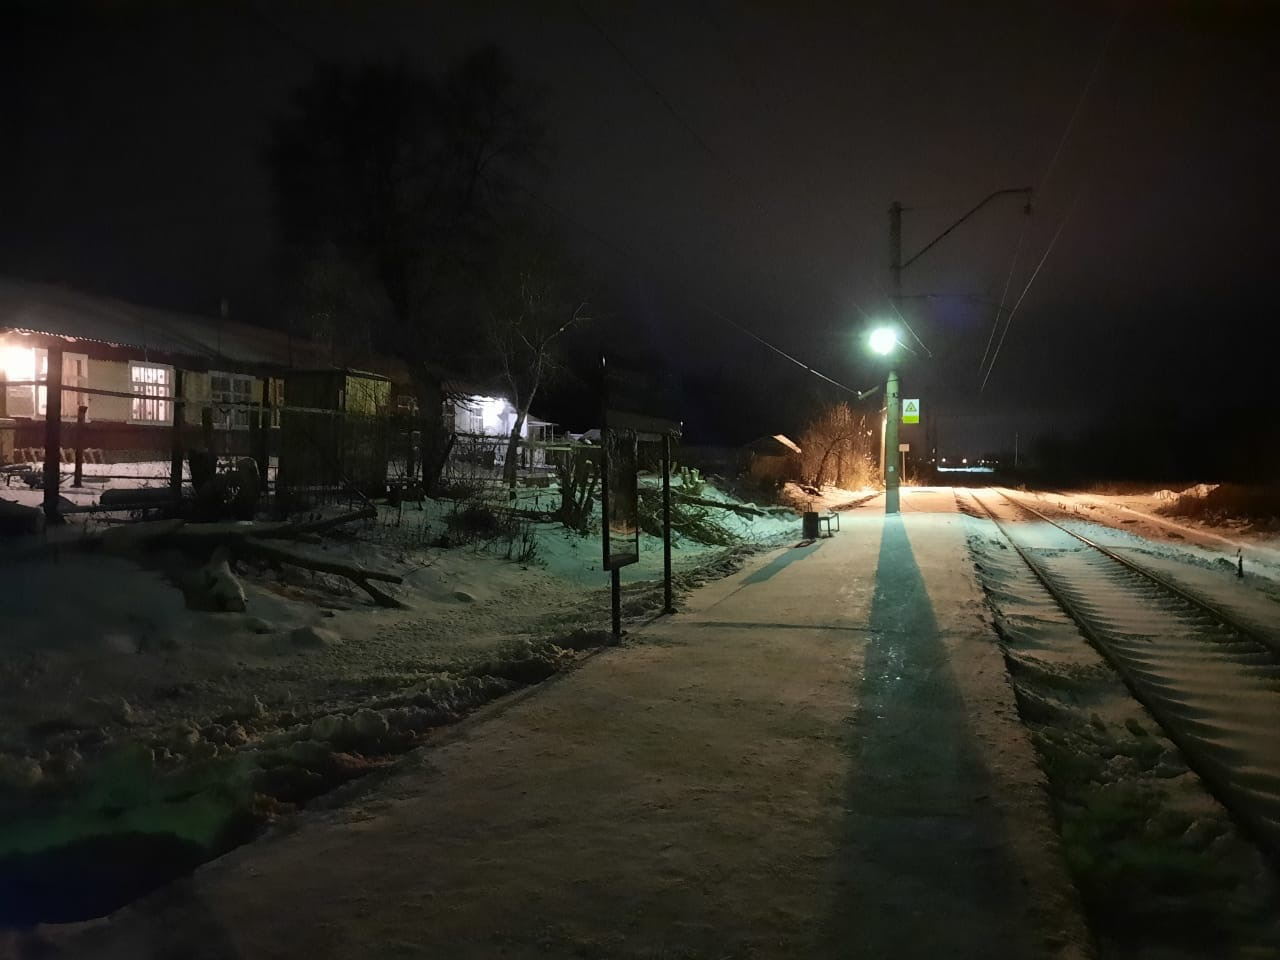 “Добираюсь домой в потемках”: житель села Вышгород пожаловался на качество освещения